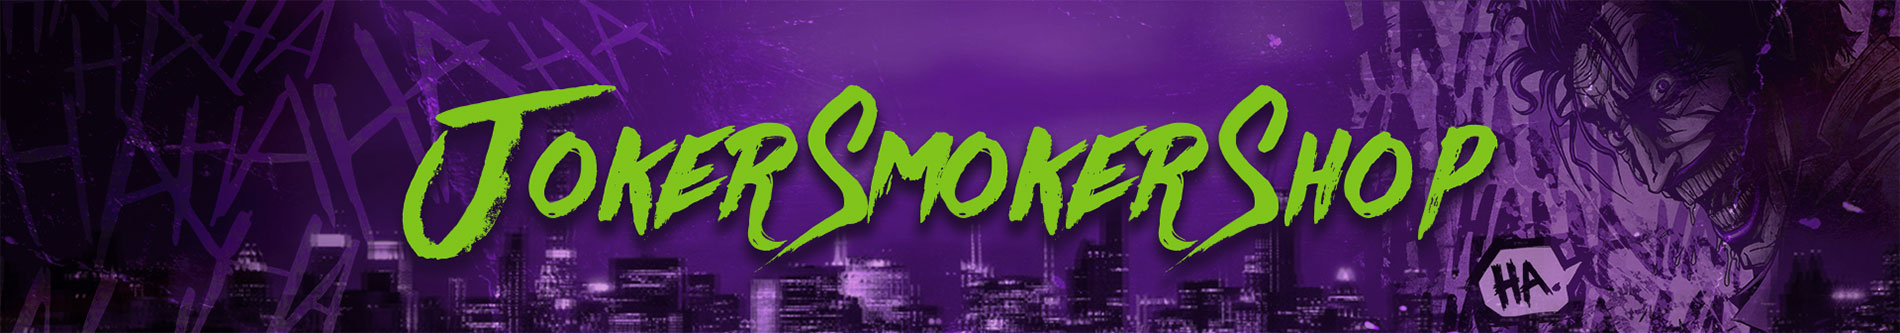 Joker smoker - Vertrauen Sie dem Gewinner unserer Experten